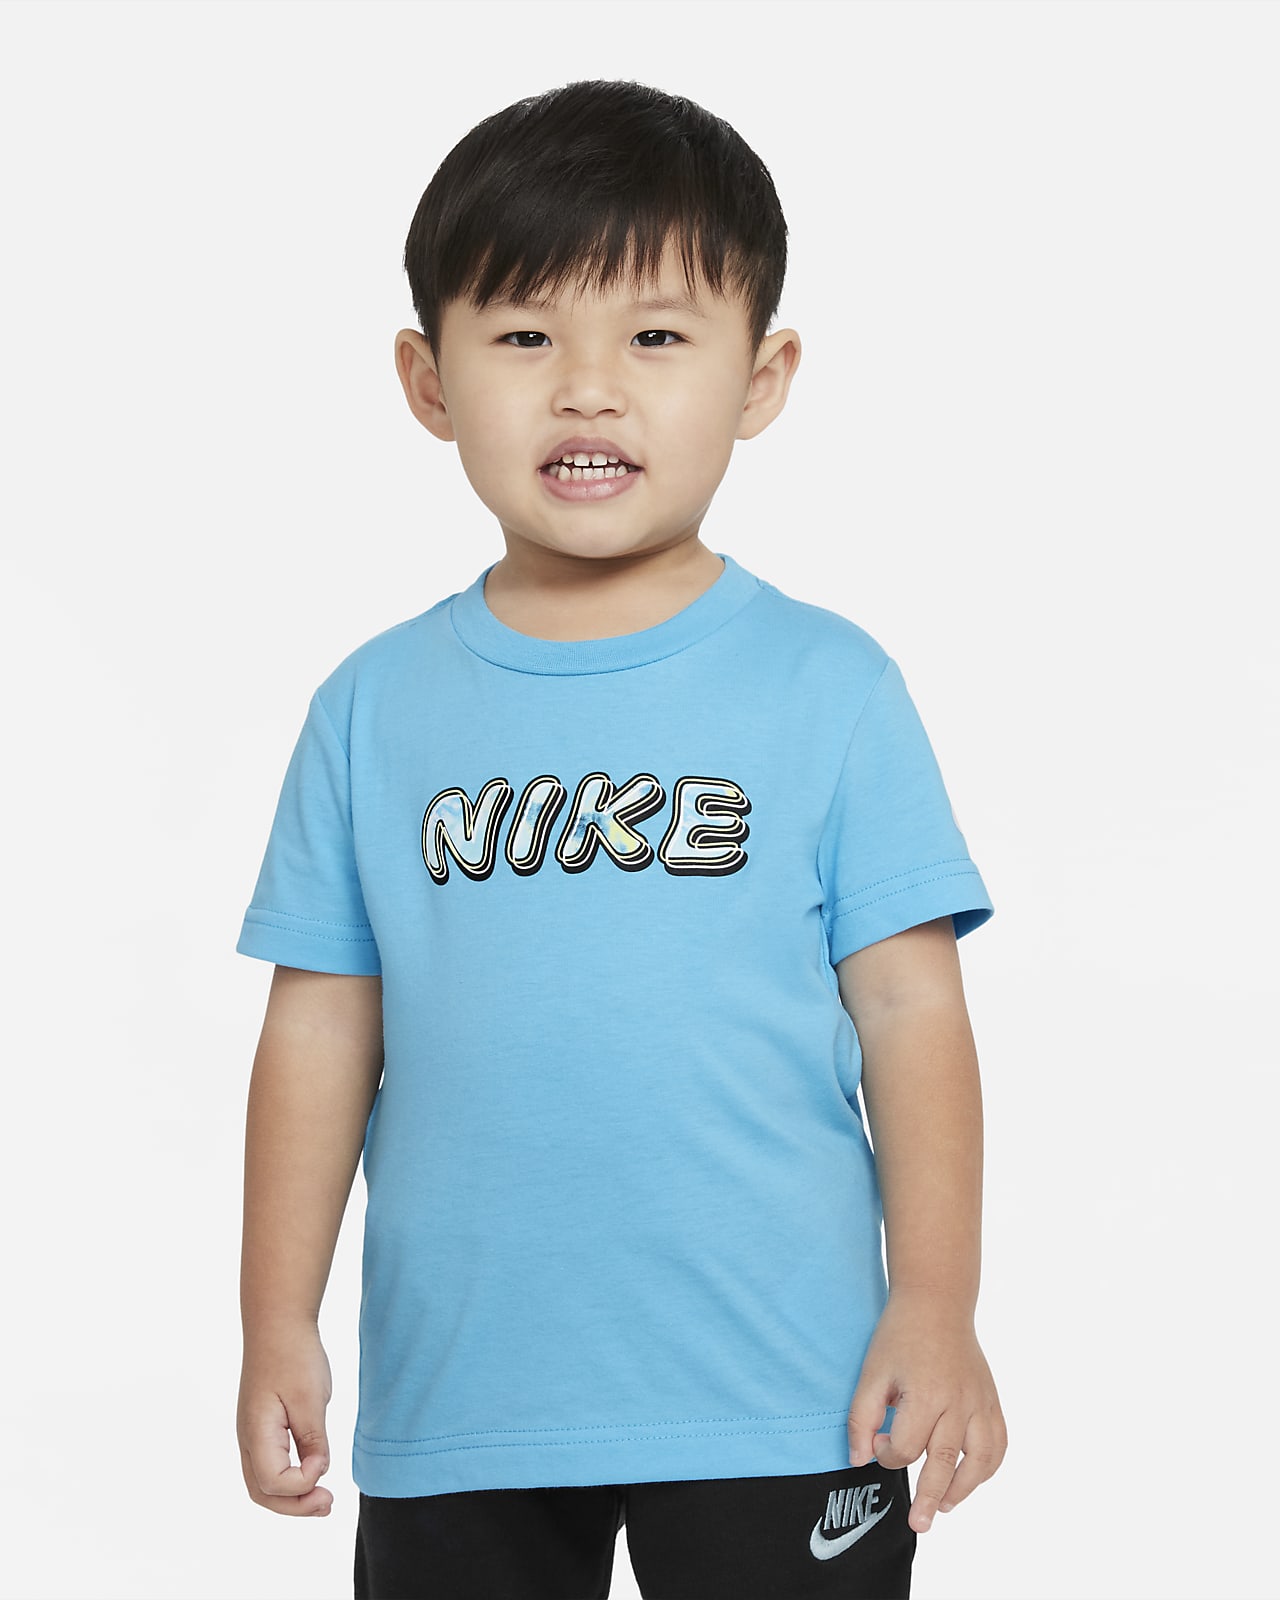 Baby Nike Shirts | lupon.gov.ph